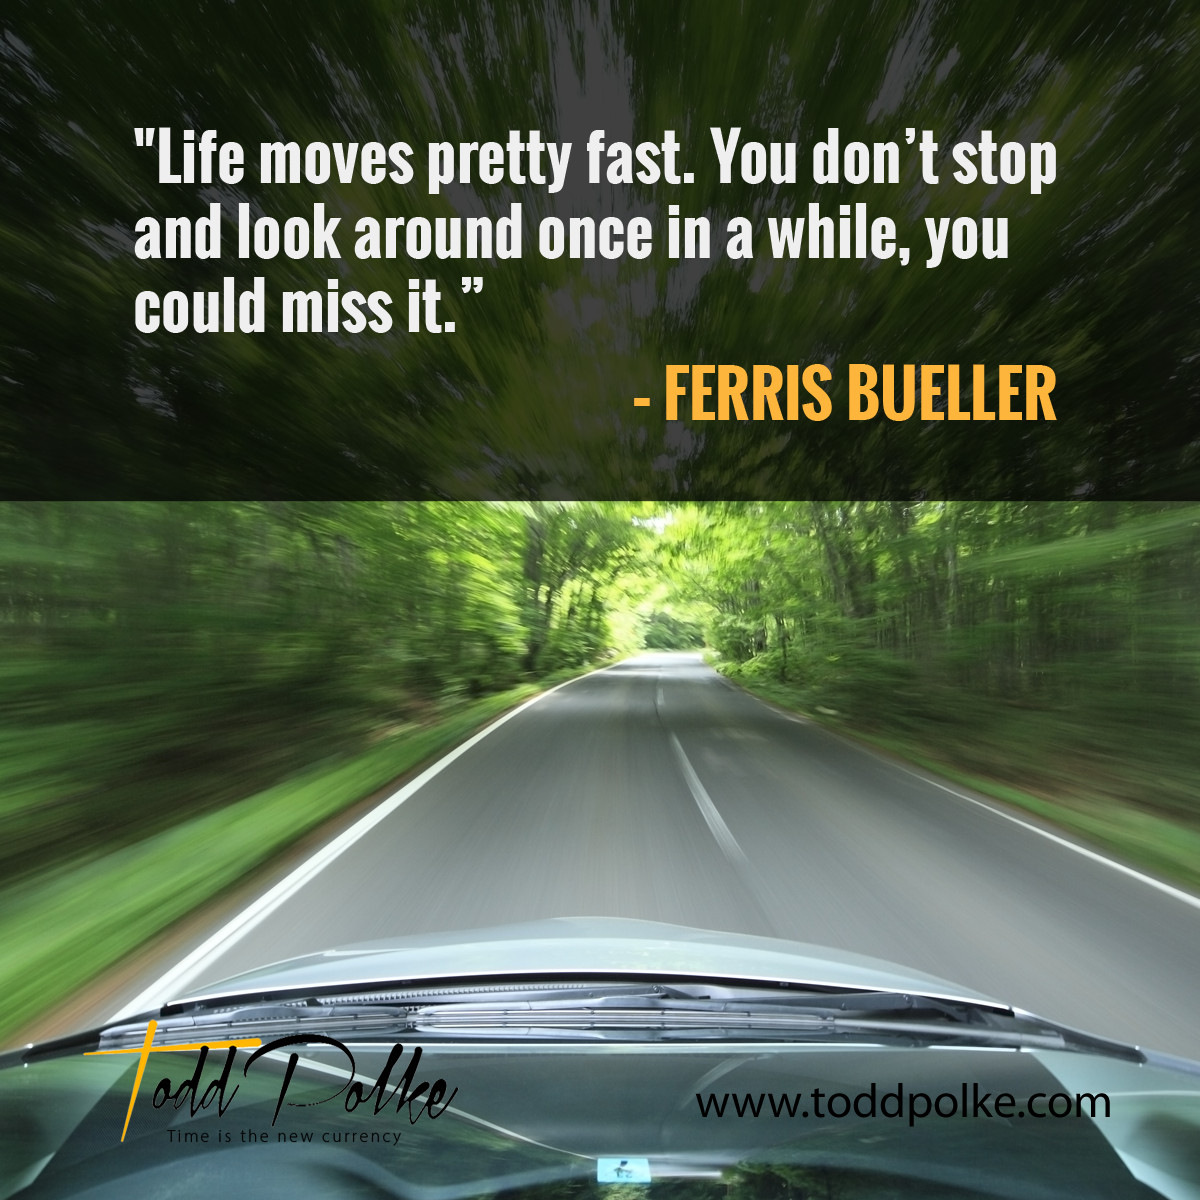 Ferris Bueller Life Quote
 Life according to Ferris Bueller